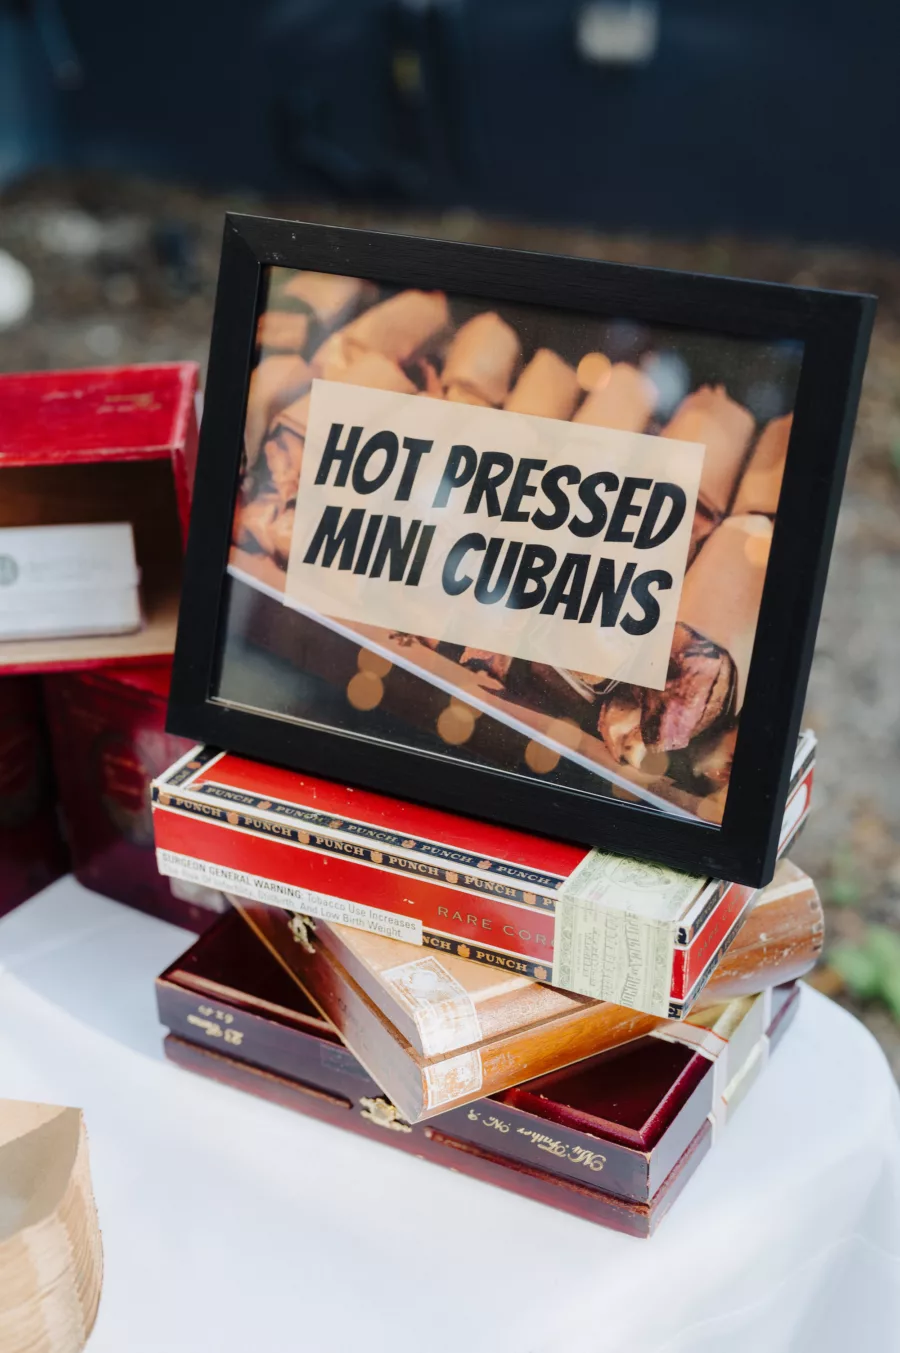 Hot Pressed Cubans Sign with Cigar Box Wedding Reception Decor Ideas